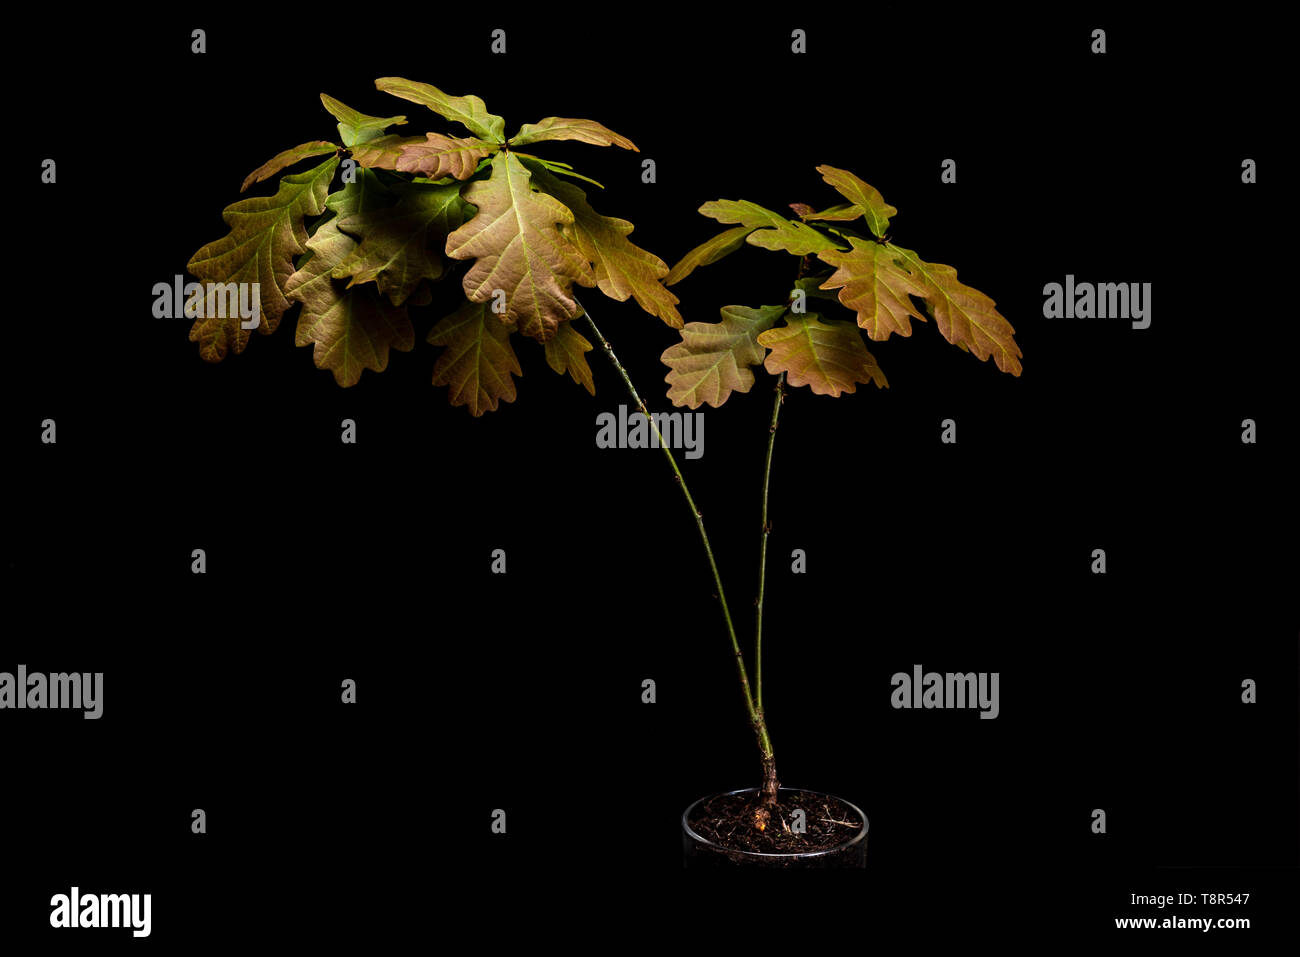 Low Key life science Bild des englischen Eiche Sämling. Schwarzer Hintergrund Quercus robur Sapling, junge Pflanzen. Stockfoto